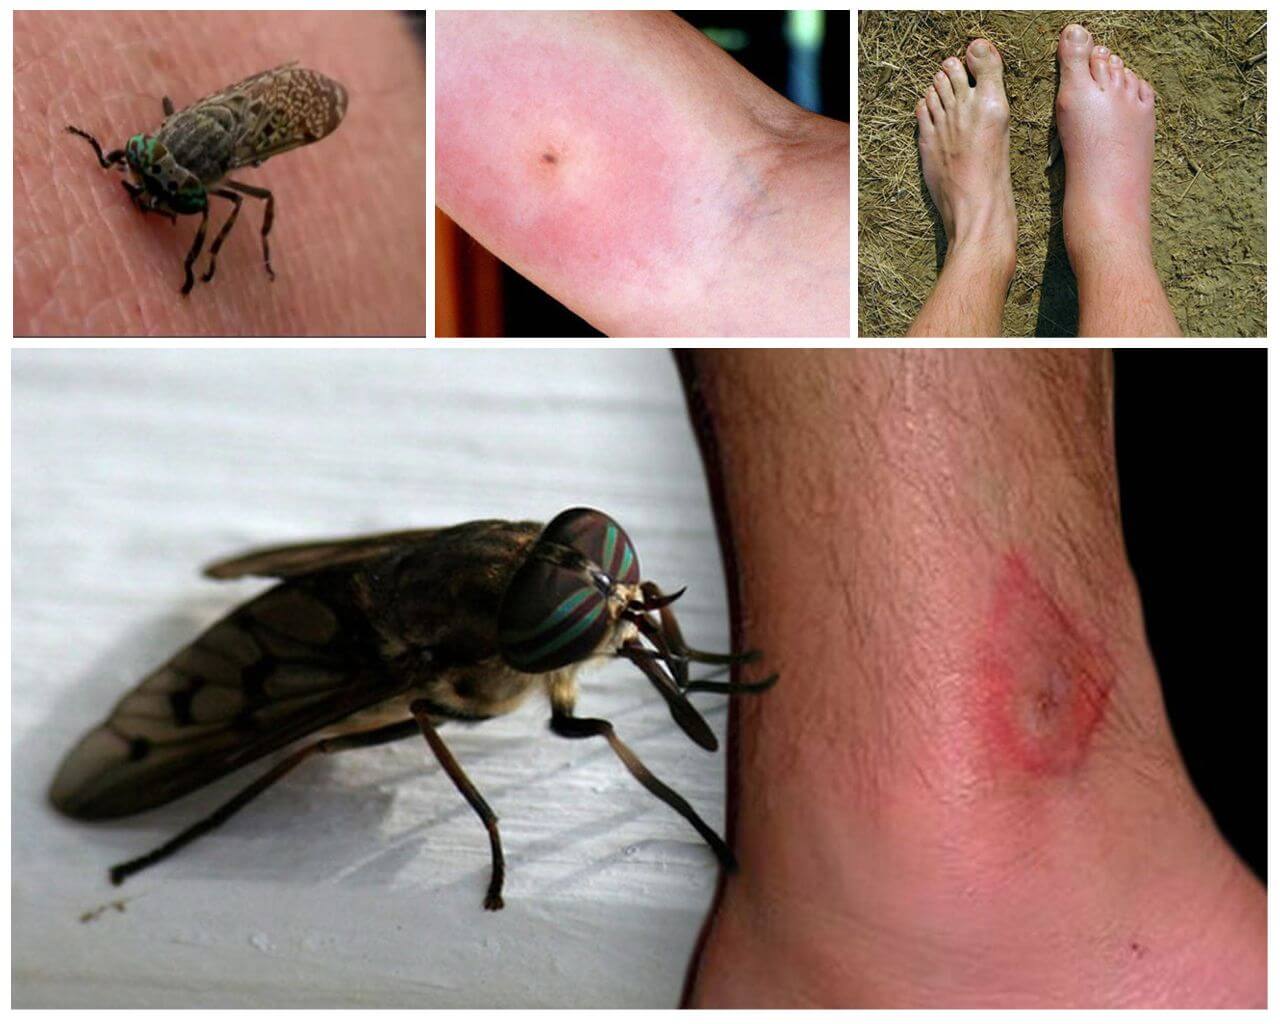 Morsure d'insecte sur le corps humain